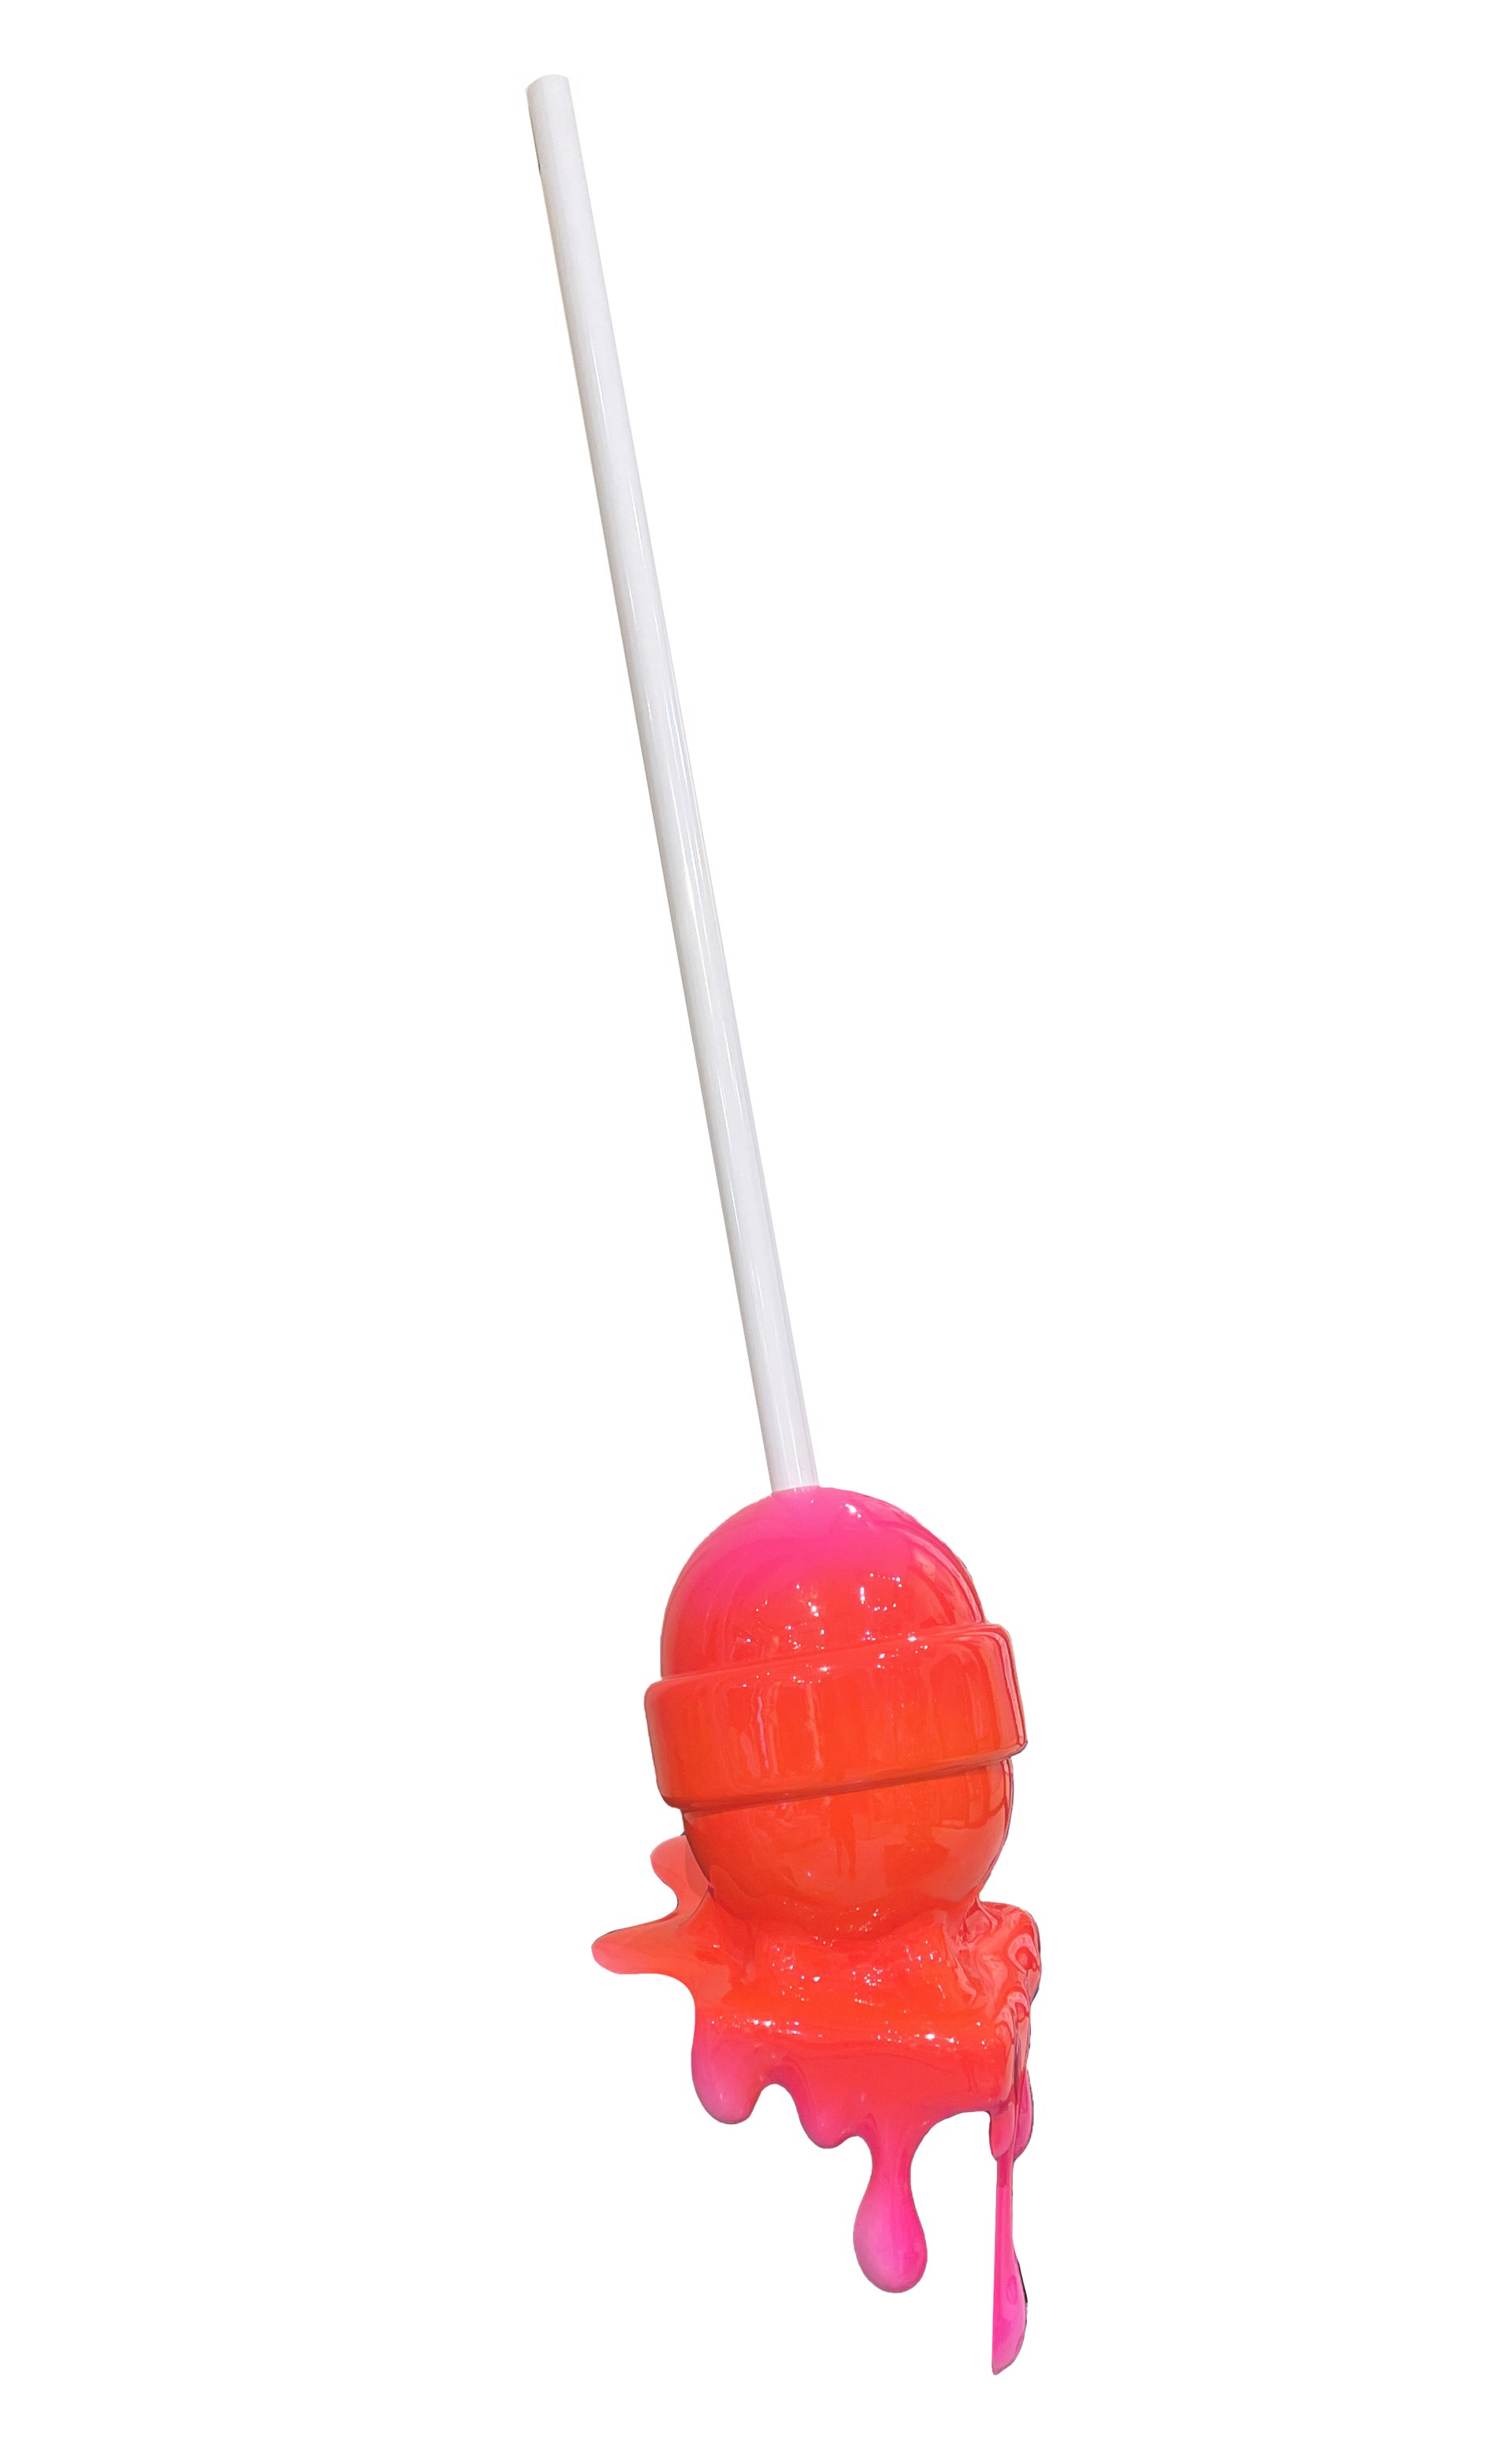 Ombre Pink/Orange  Lollipop by Lollipops by Elena Bulatova